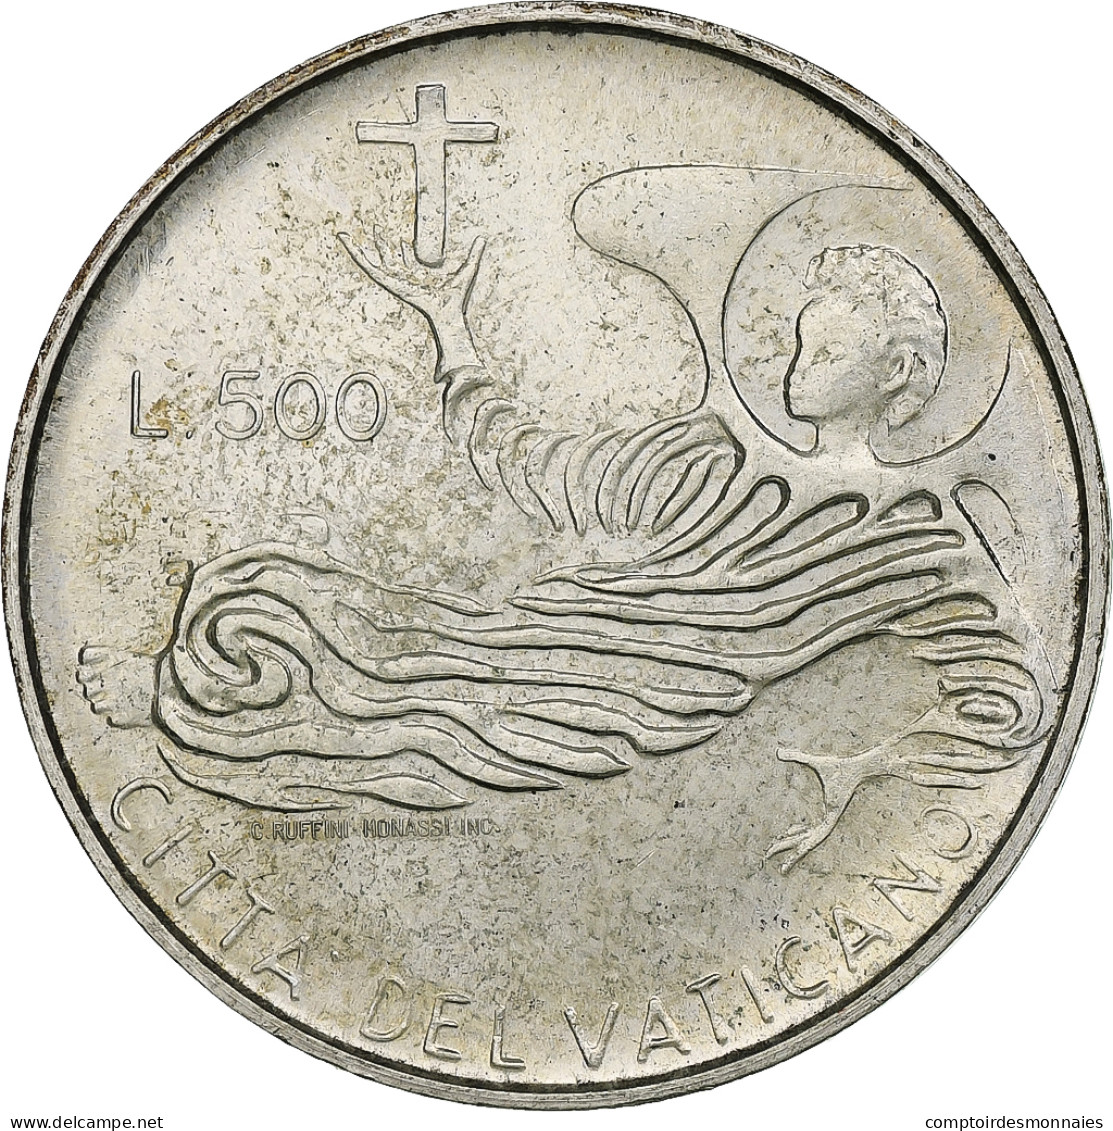 Vatican, Paul VI, 500 Lire, 1969 - Anno VII, Rome, Argent, SPL+, KM:115 - Vaticano